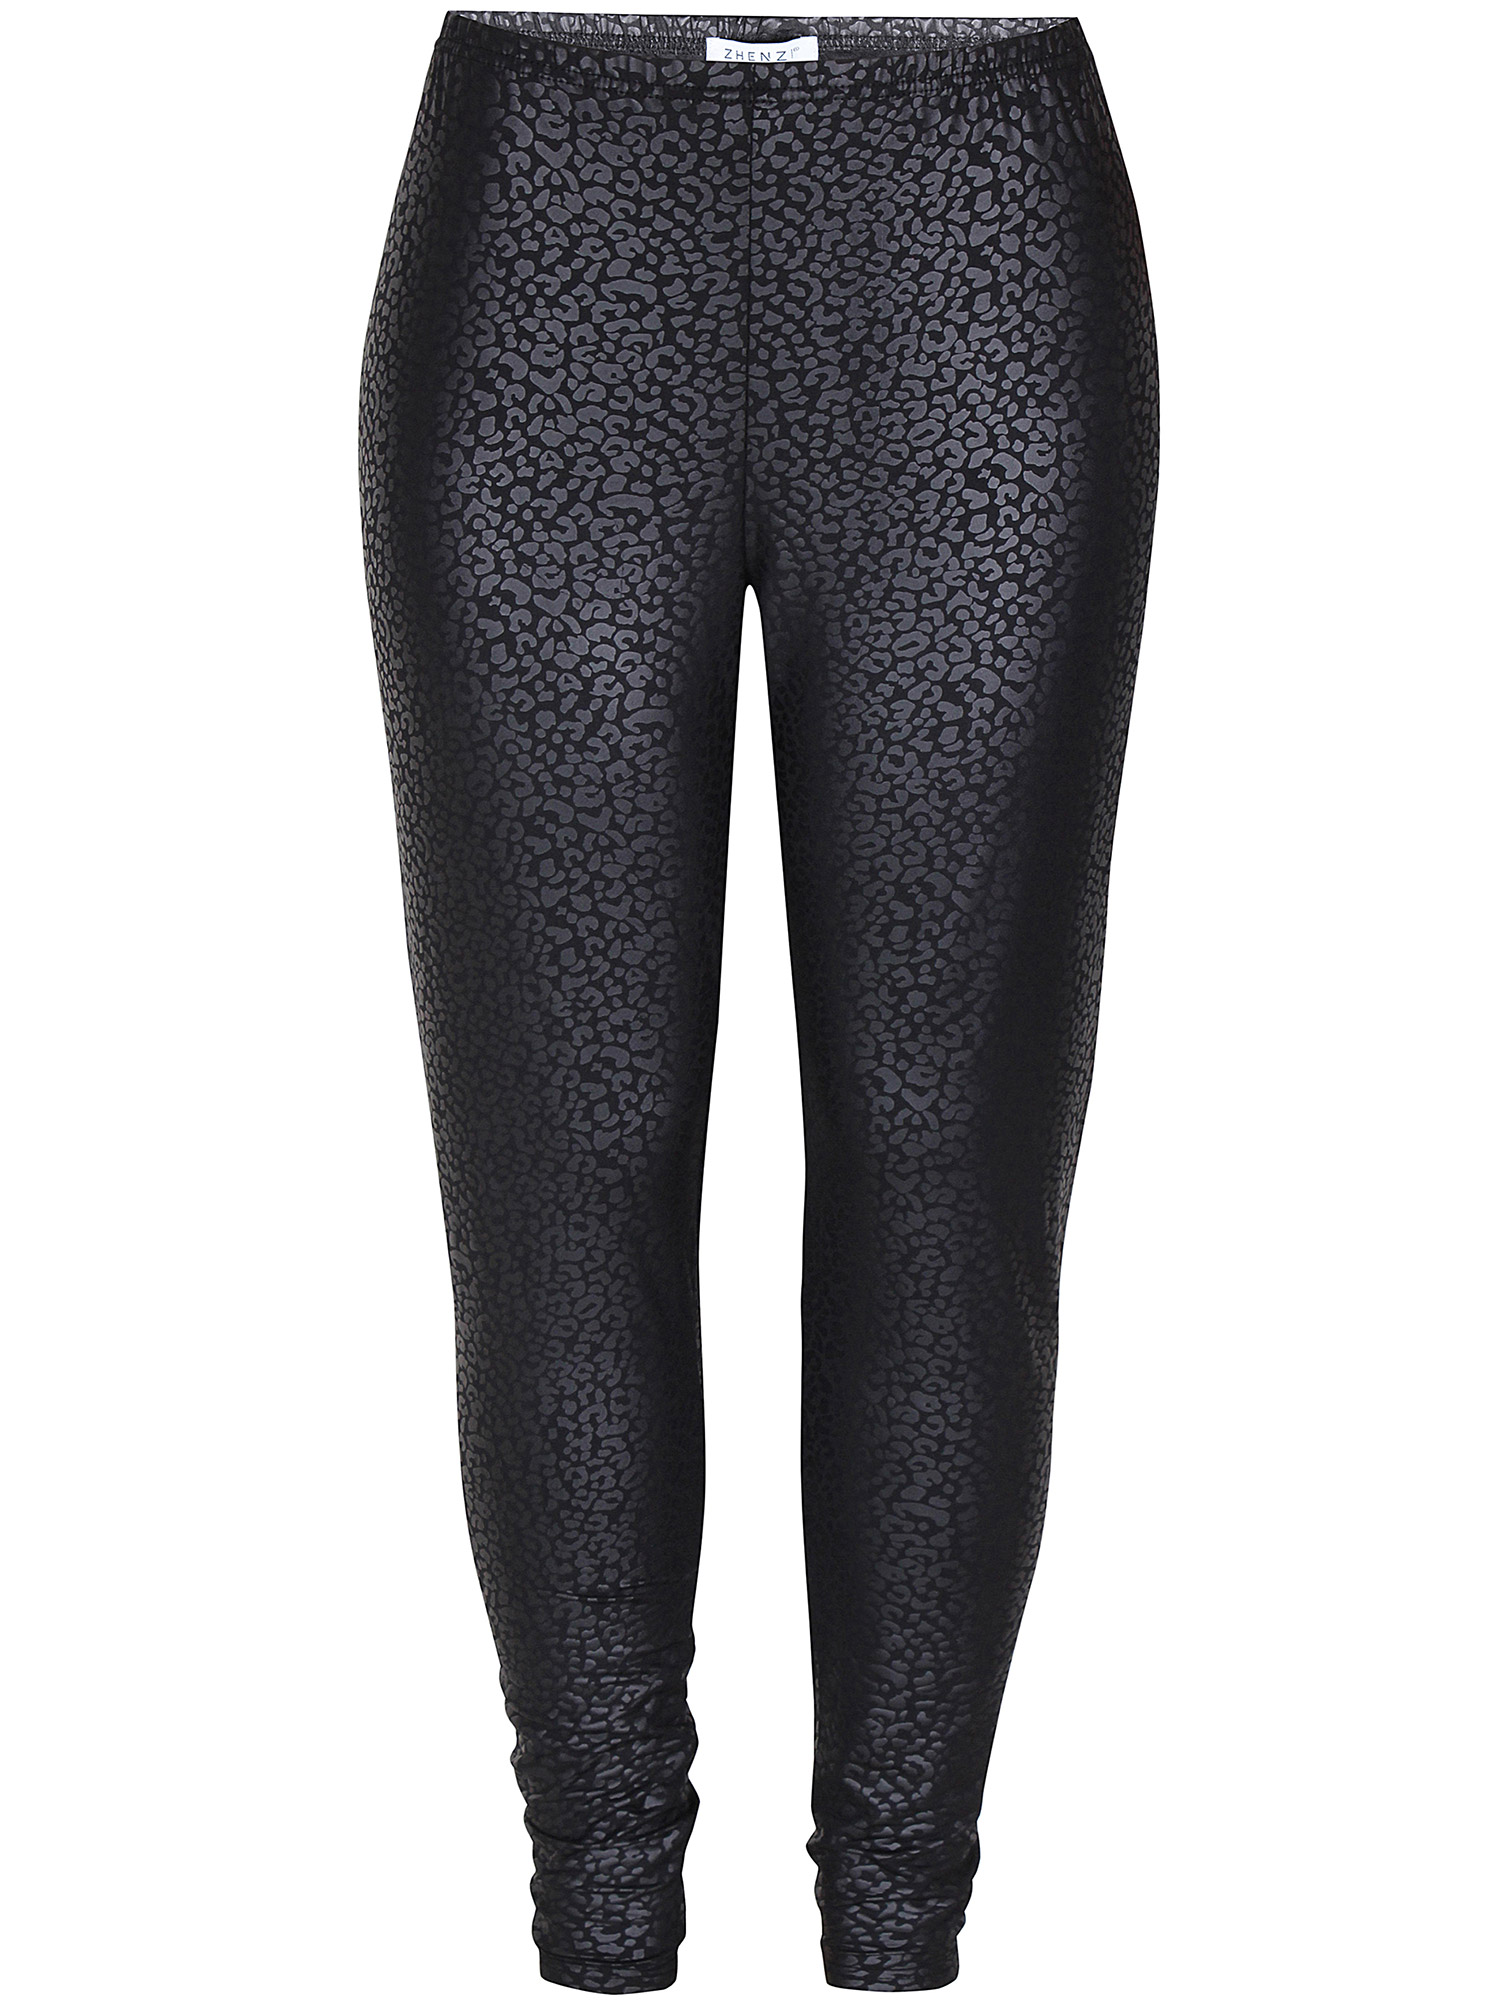 Freda - Svarta leggings med mönster i läderlook fra Zhenzi